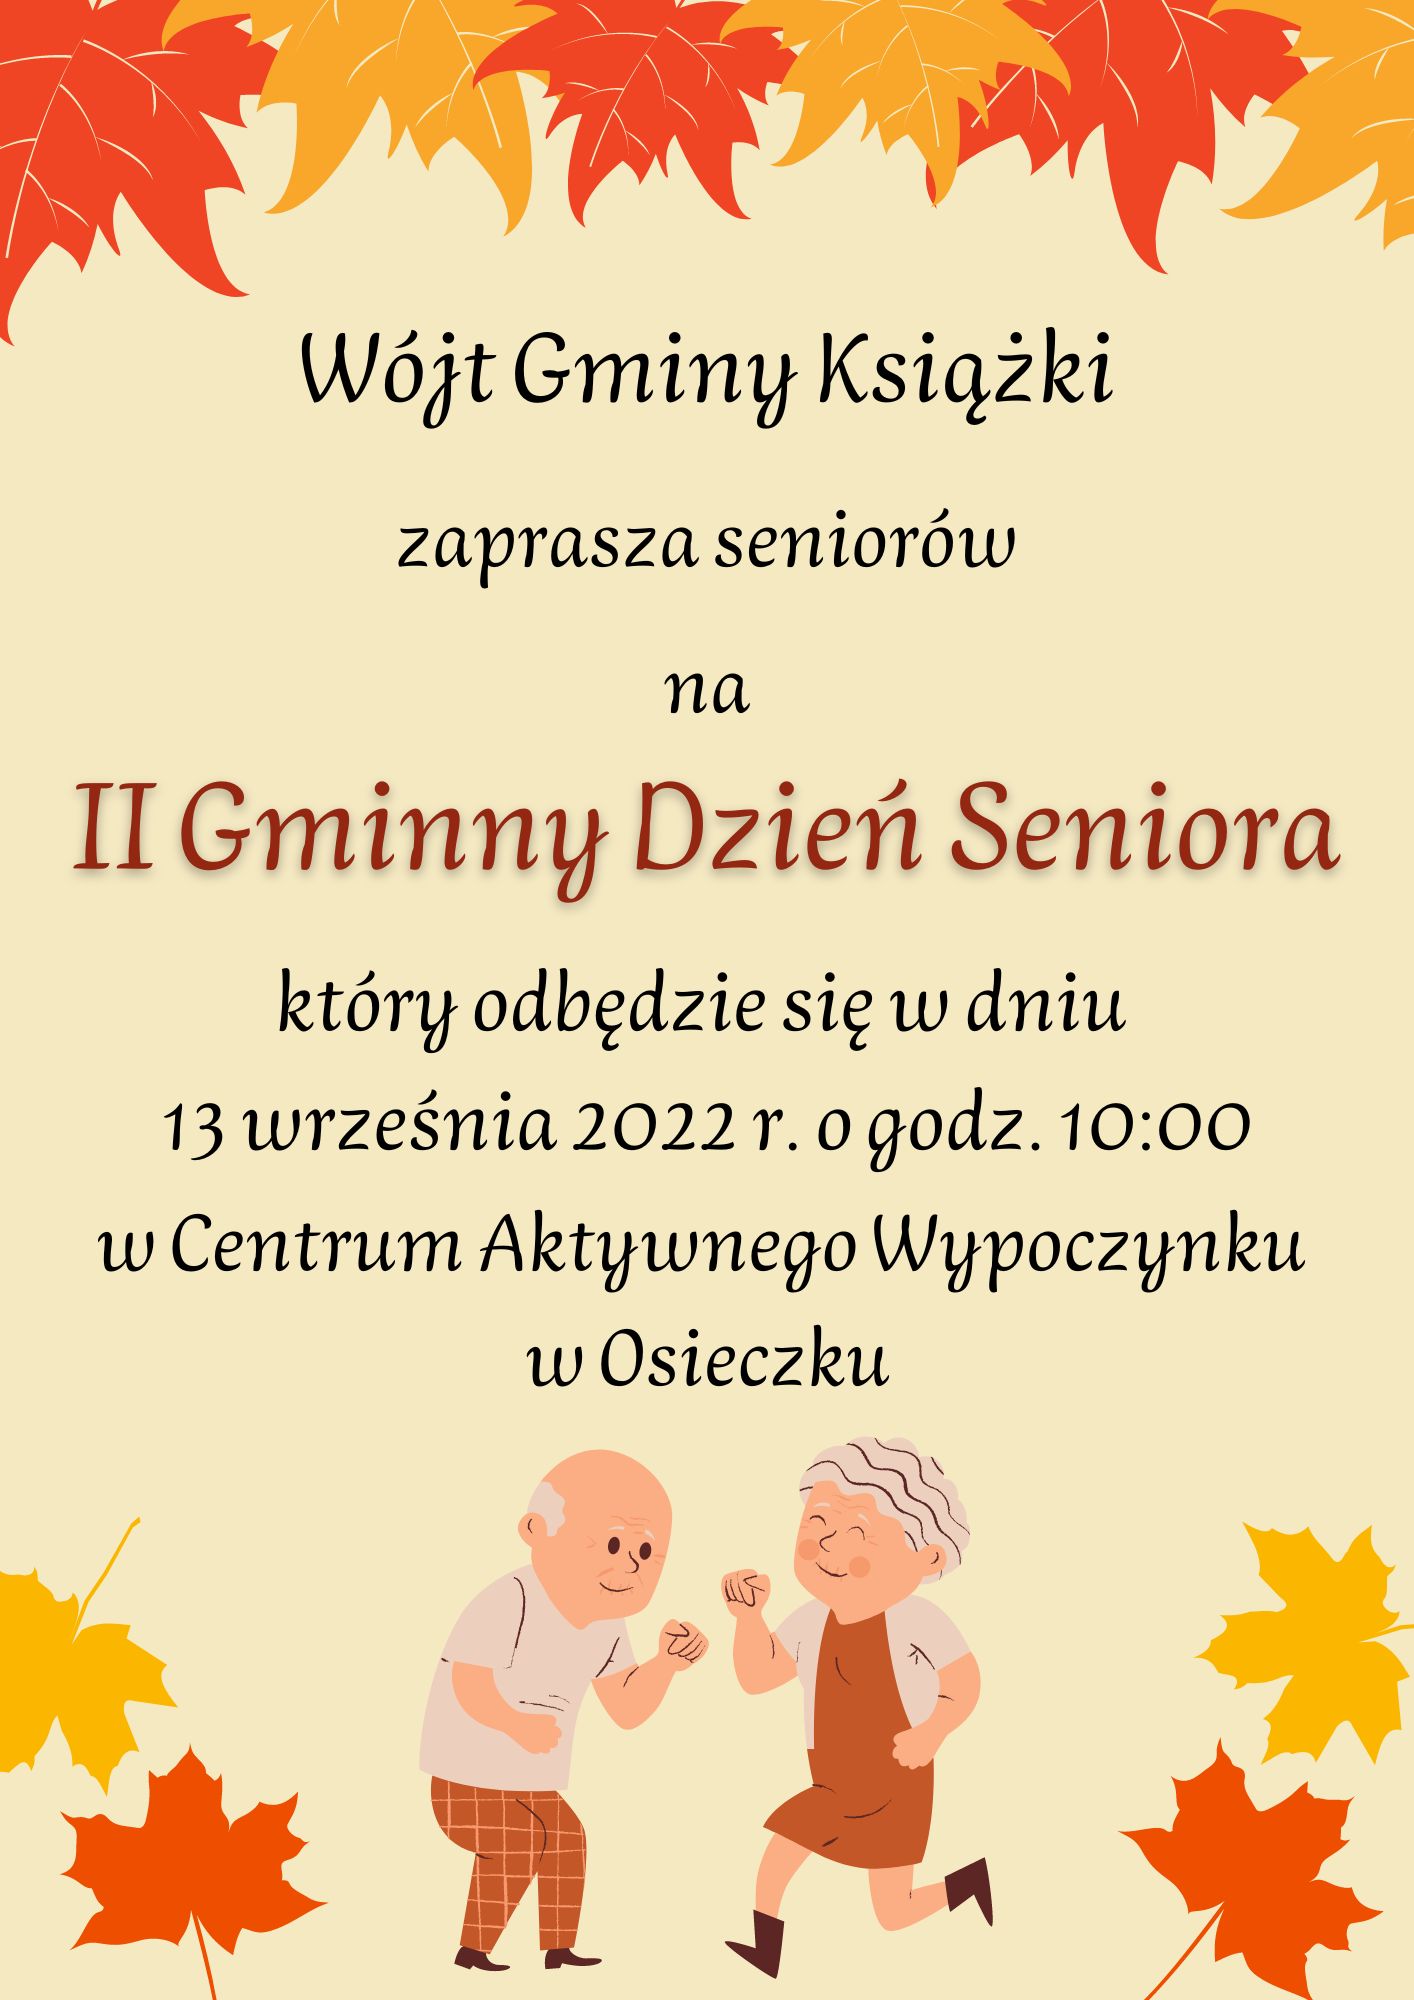 plakat - Wójt Gminy Książki zaprasza seniorów na II Gminny Dzień Seniora, który odbędzie się w dniu 13 września 2022 r. o godz. 10:00 w Centrum Aktywnego Wypoczynku w Osieczku